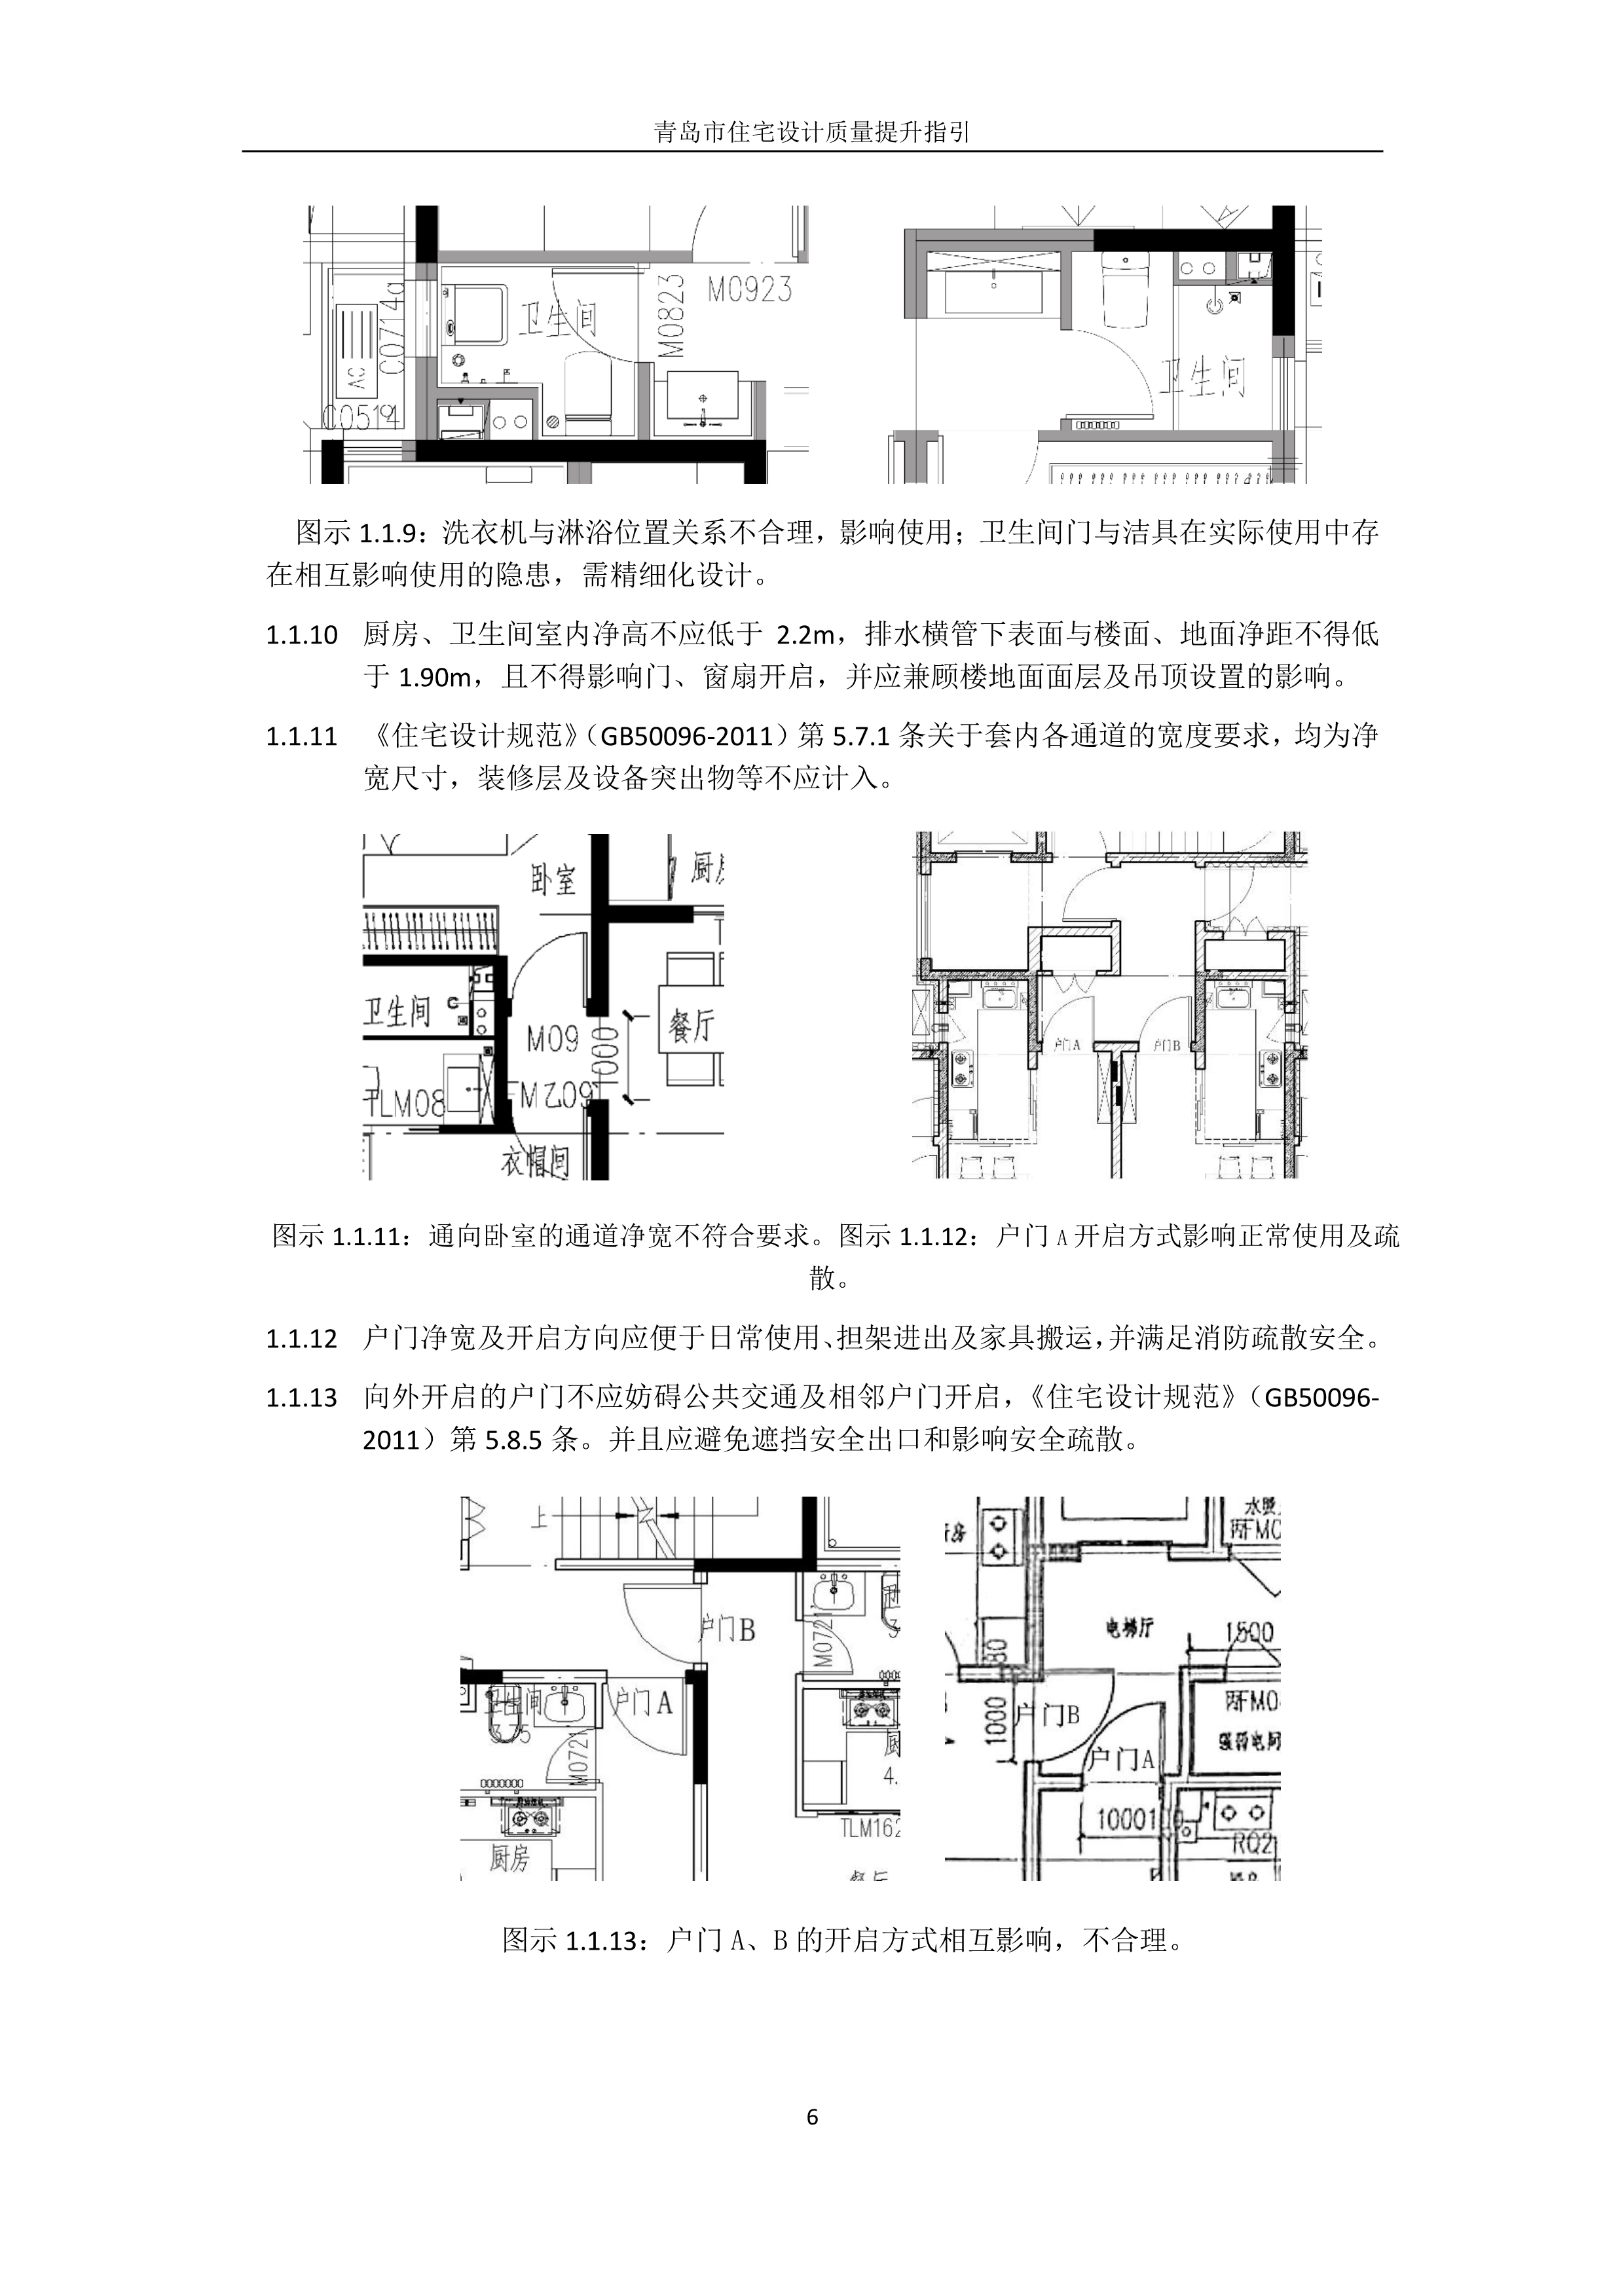 关于发布《青岛市住宅设计质量提升指引》 的通知